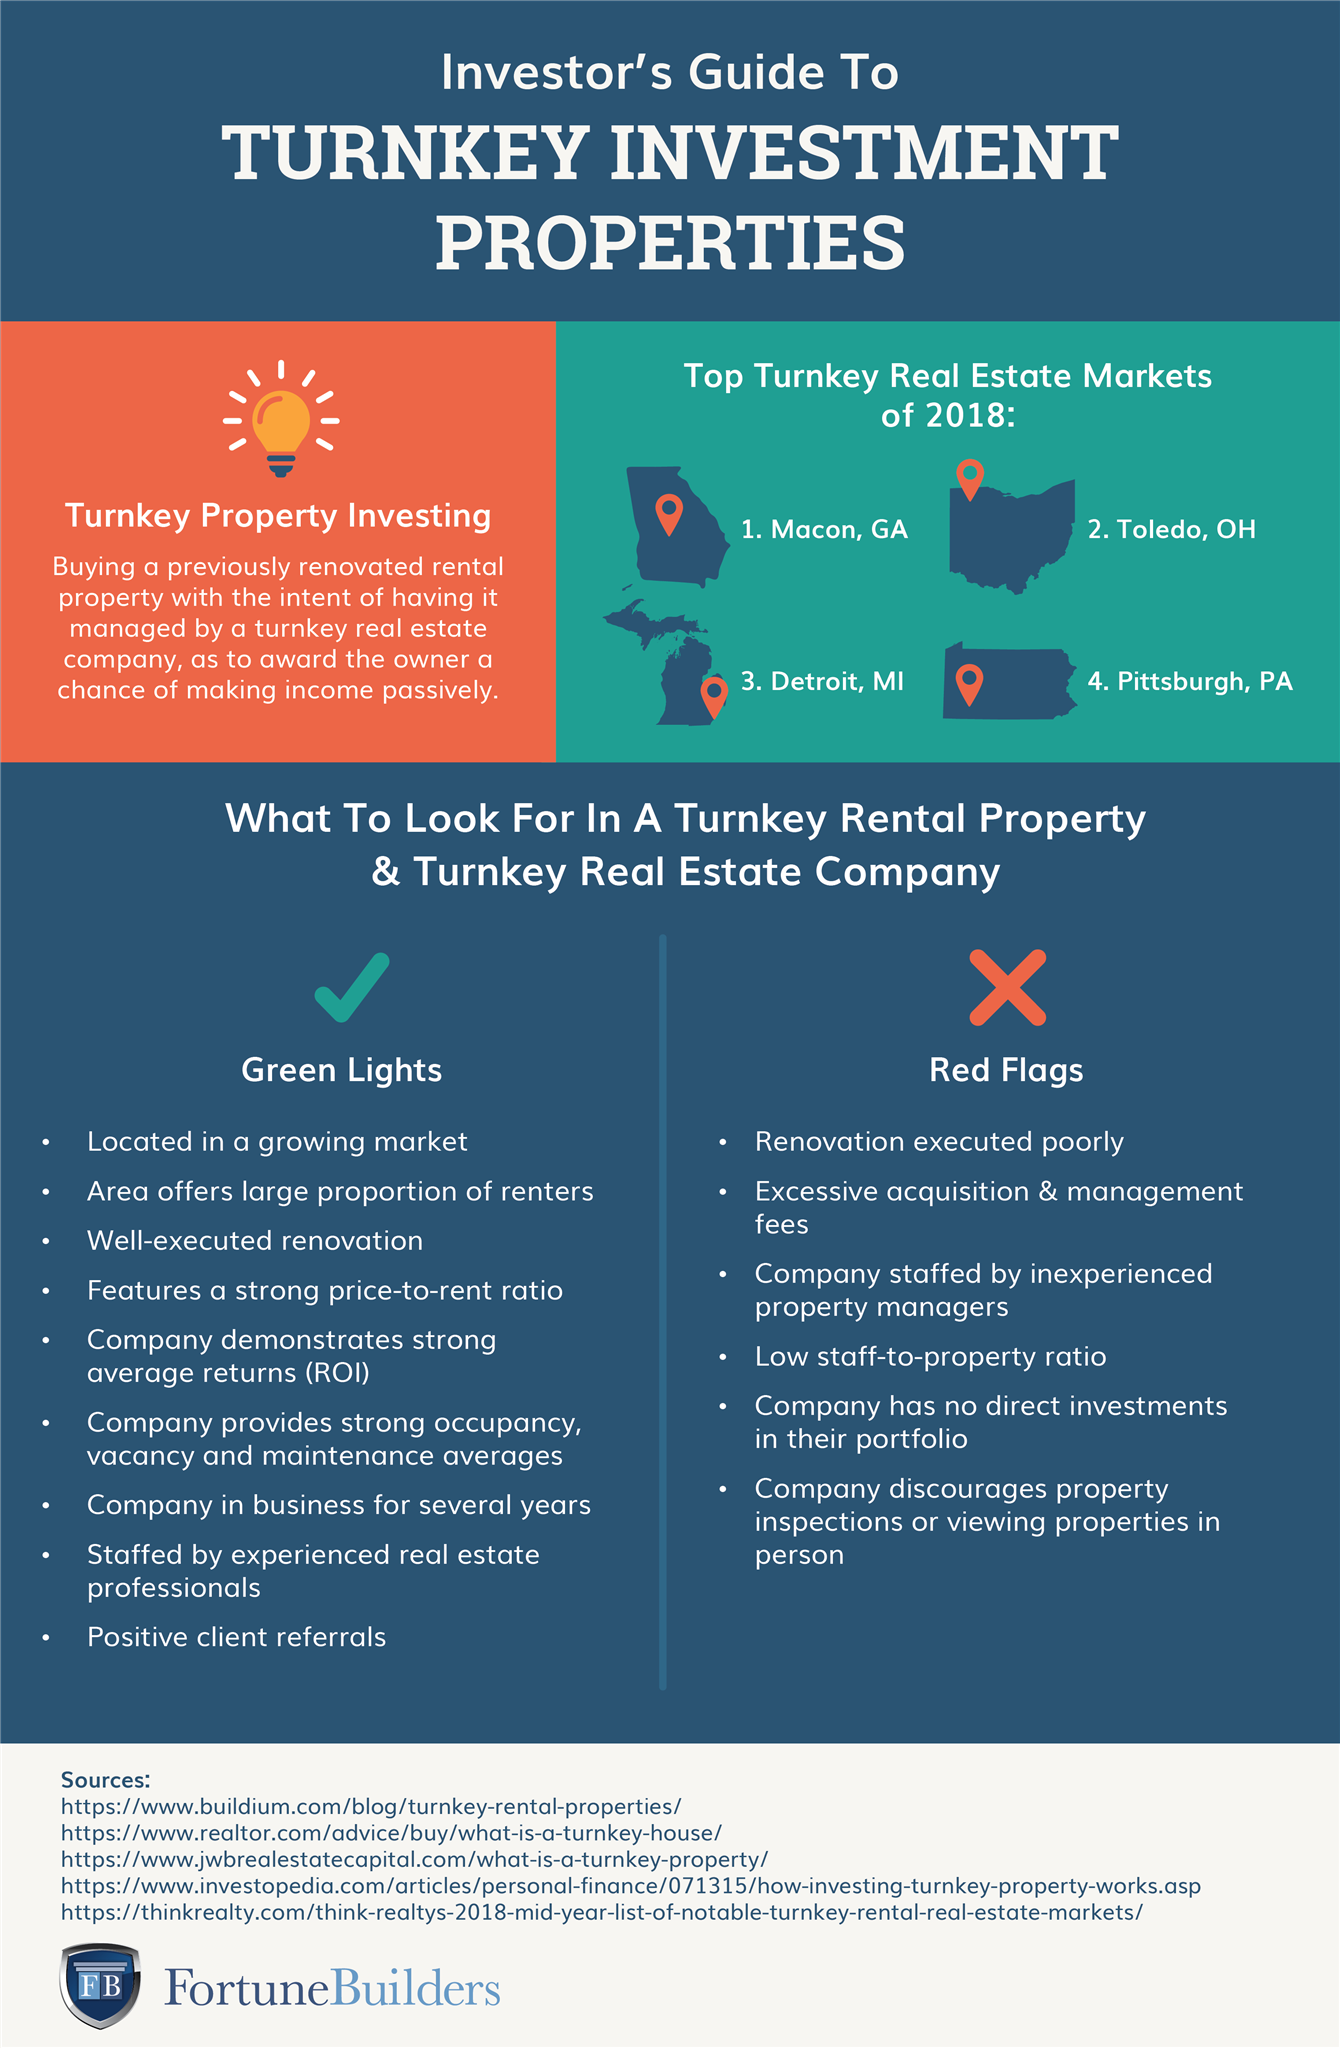 Turnkey rental property